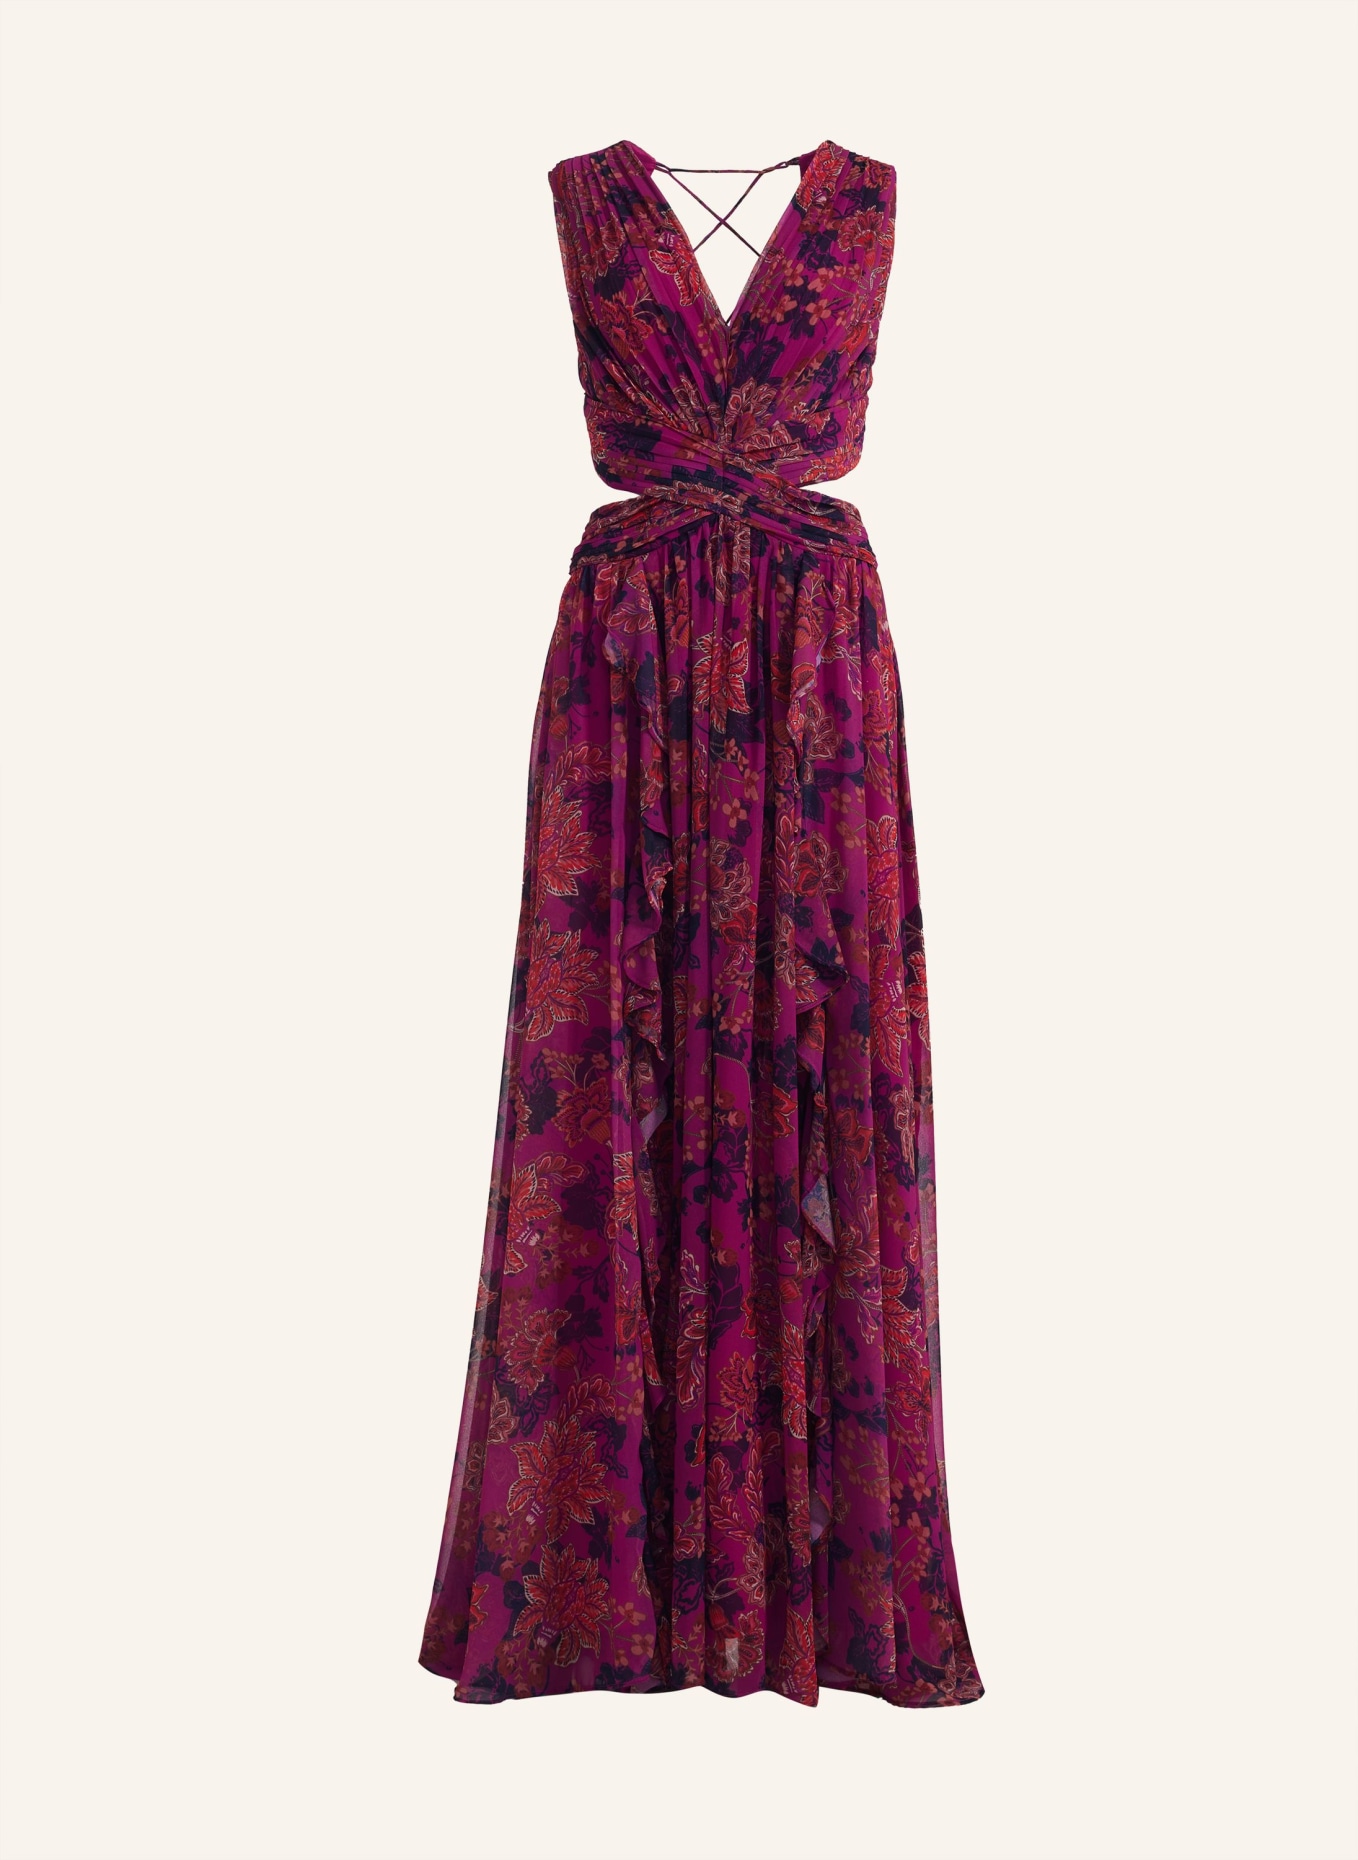 ADLYSH Abendkleid FAIRYTALE DRESS, Farbe: DUNKELROT (Bild 1)